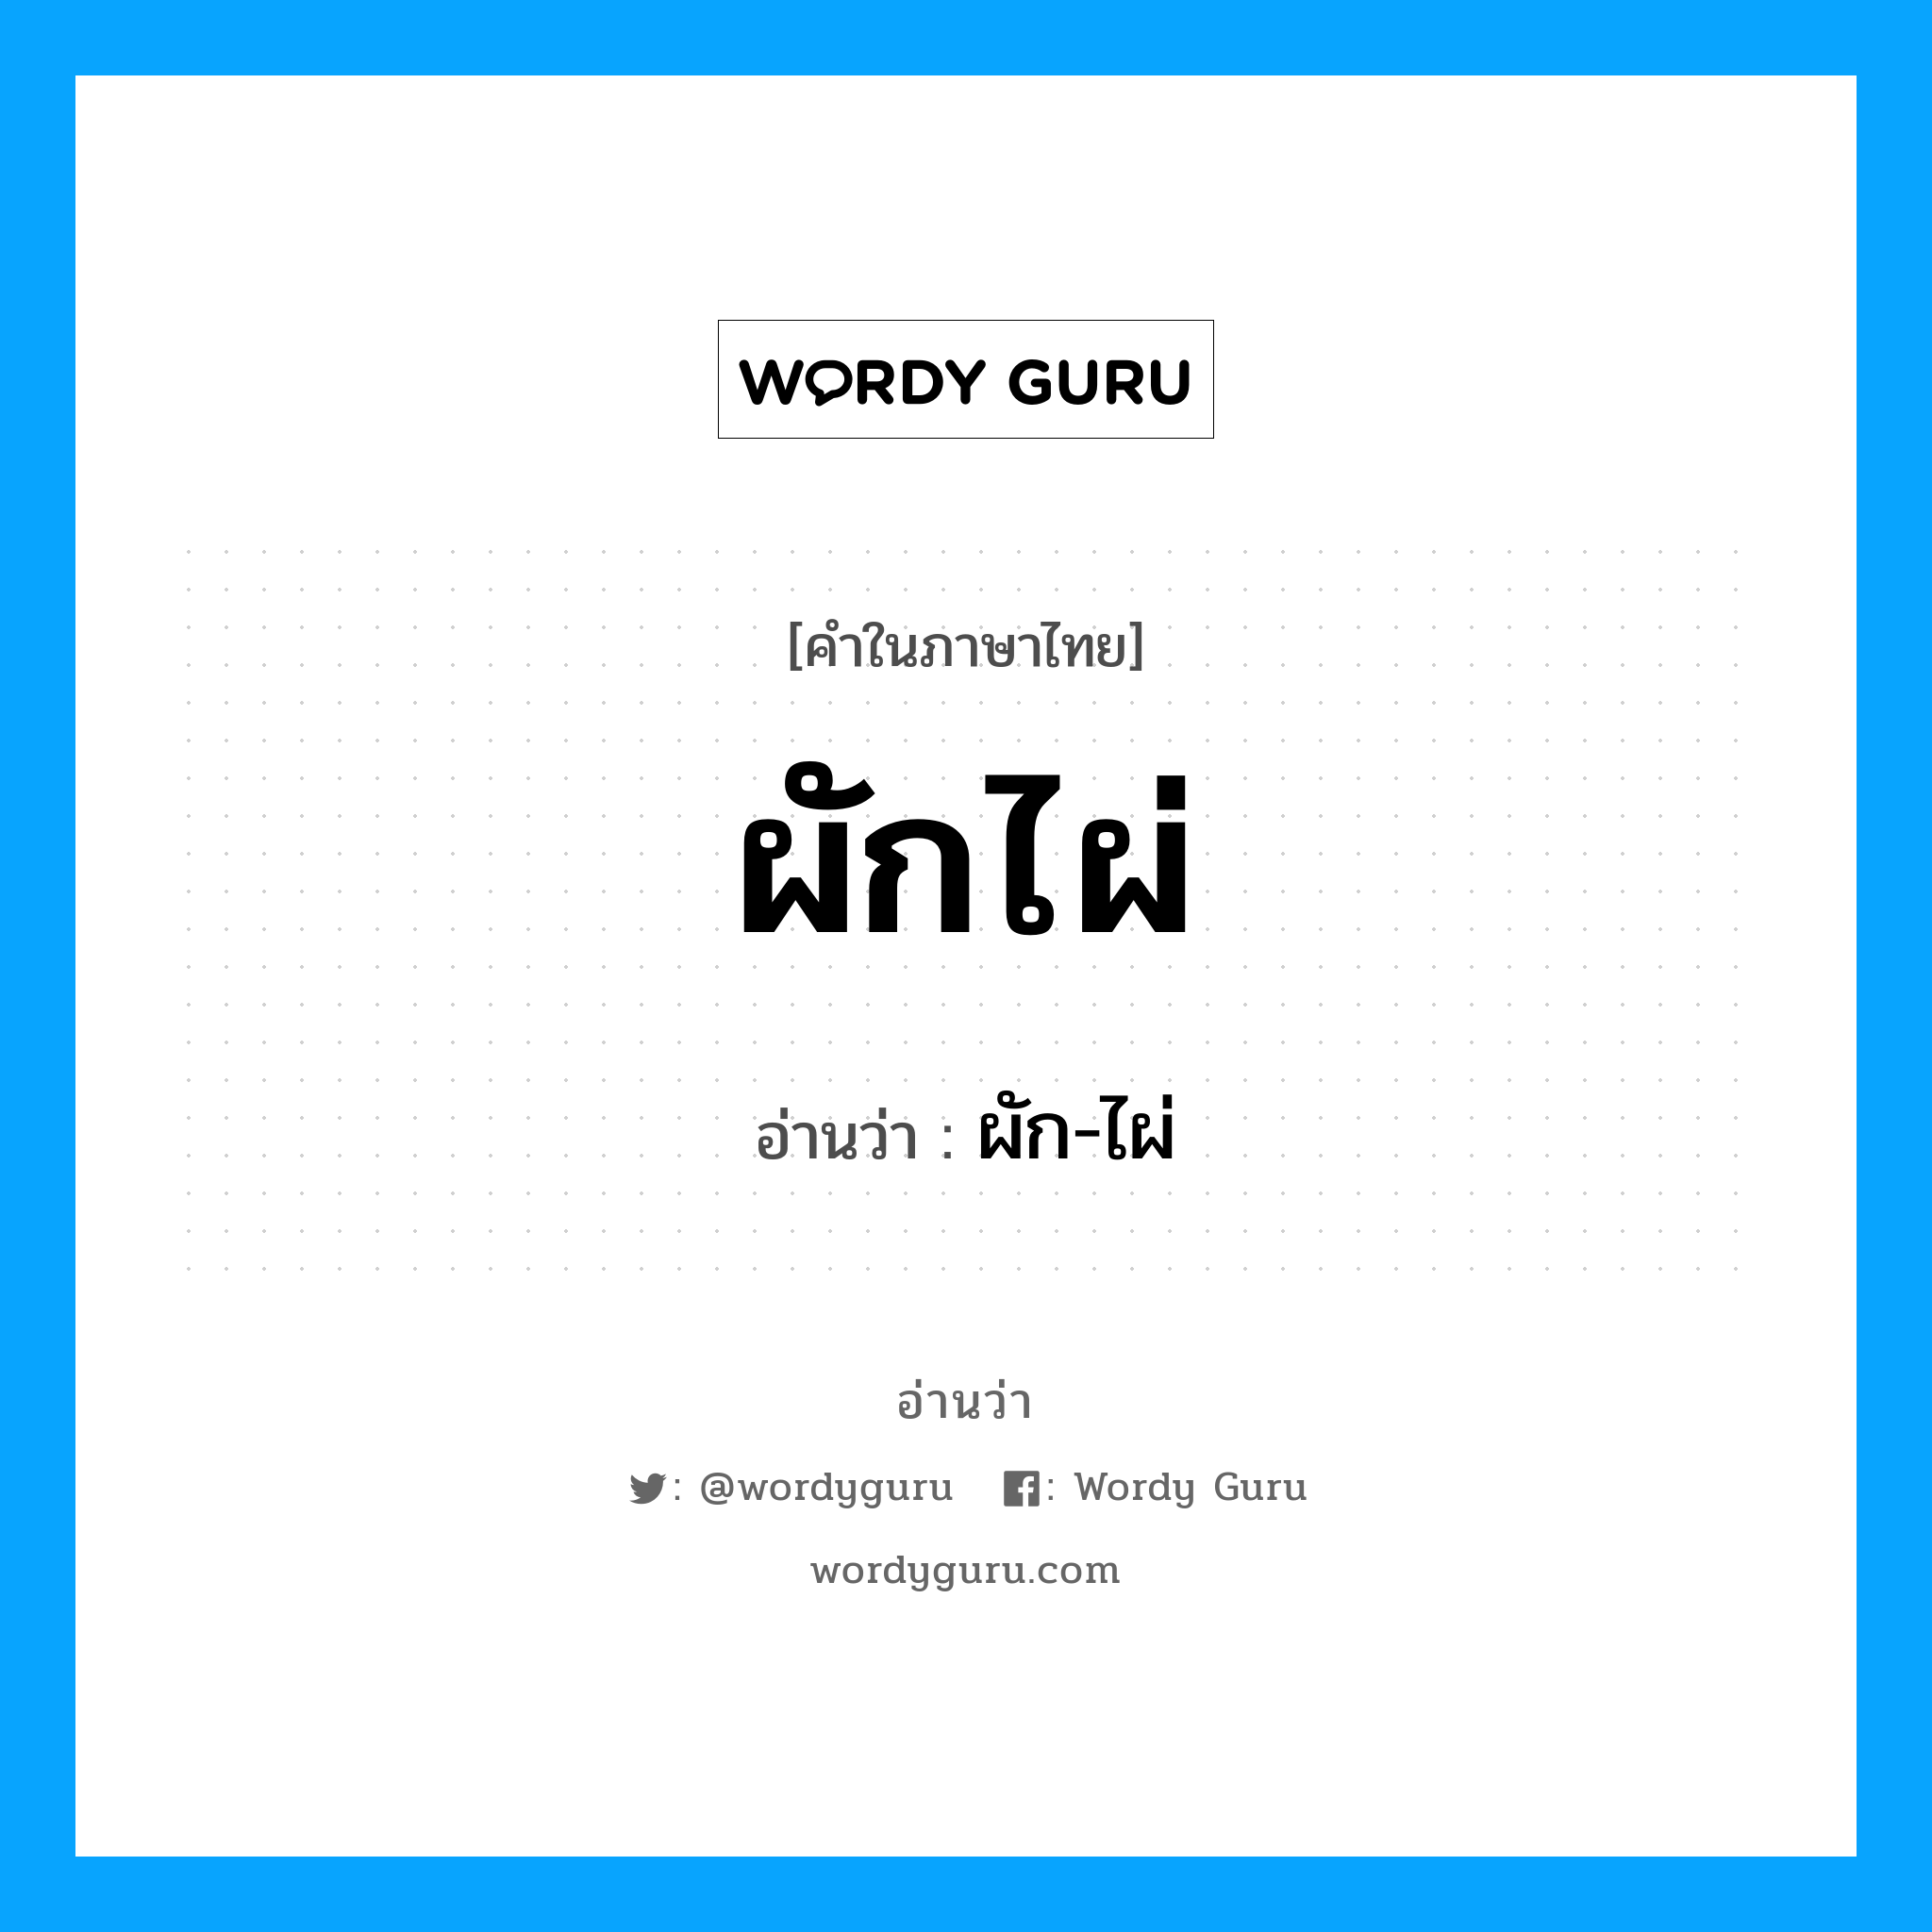 ผัก-ไผ่ เป็นคำอ่านของคำไหน?, คำในภาษาไทย ผัก-ไผ่ อ่านว่า ผักไผ่